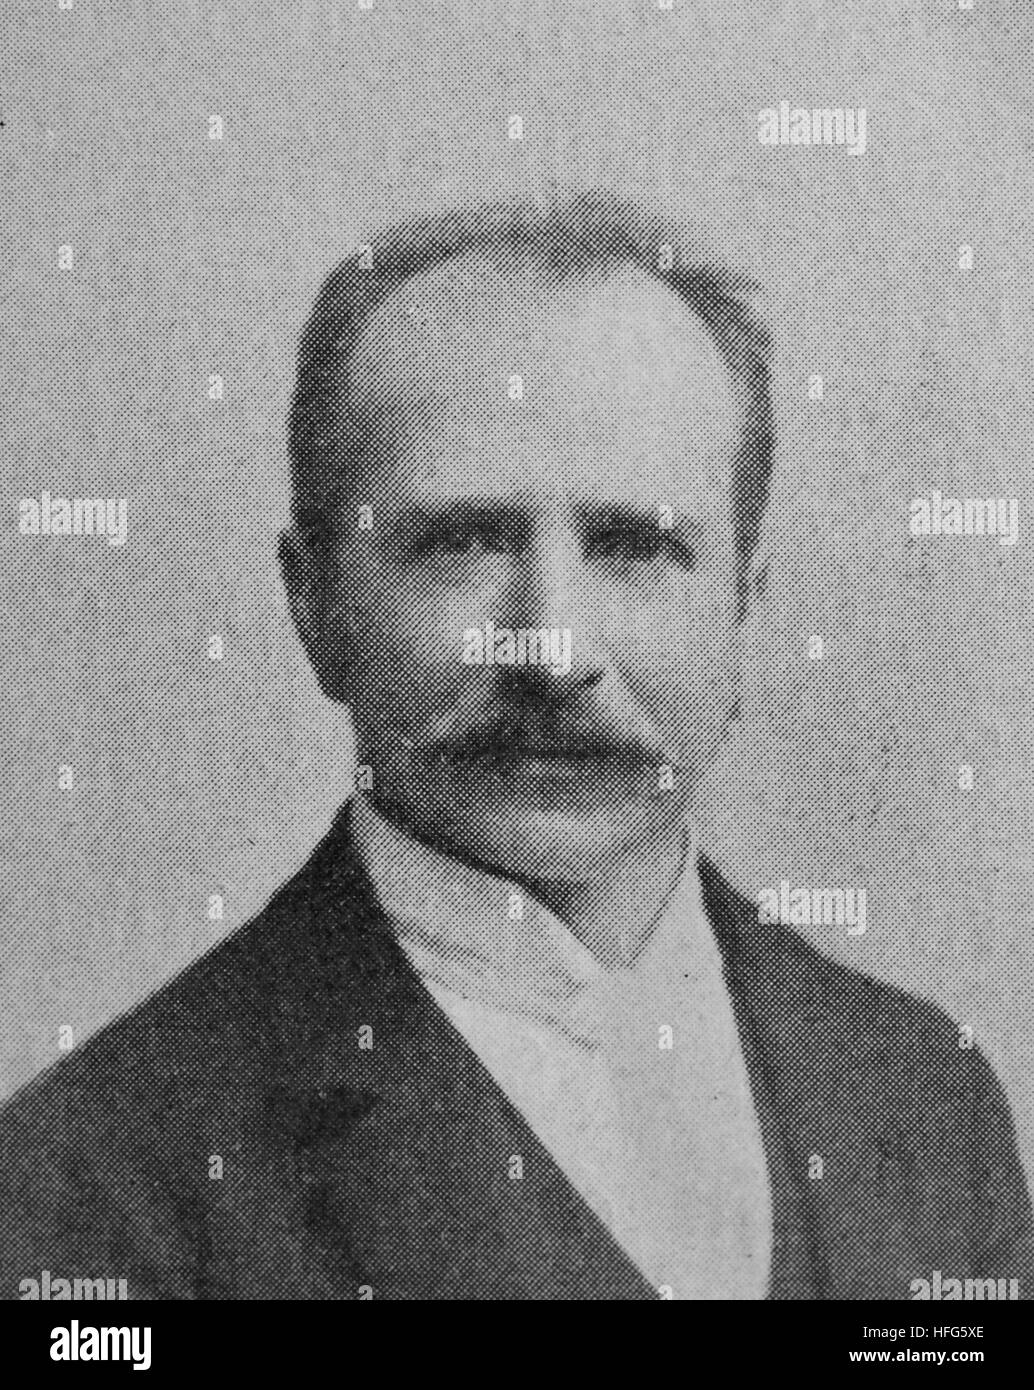 Max Friedlaender, war 1852-1934, ein deutscher Bass Sänger, Musikredakteur und Musikwissenschaftler, Reproduktion Foto aus dem Jahr 1895, digital verbessert Stockfoto